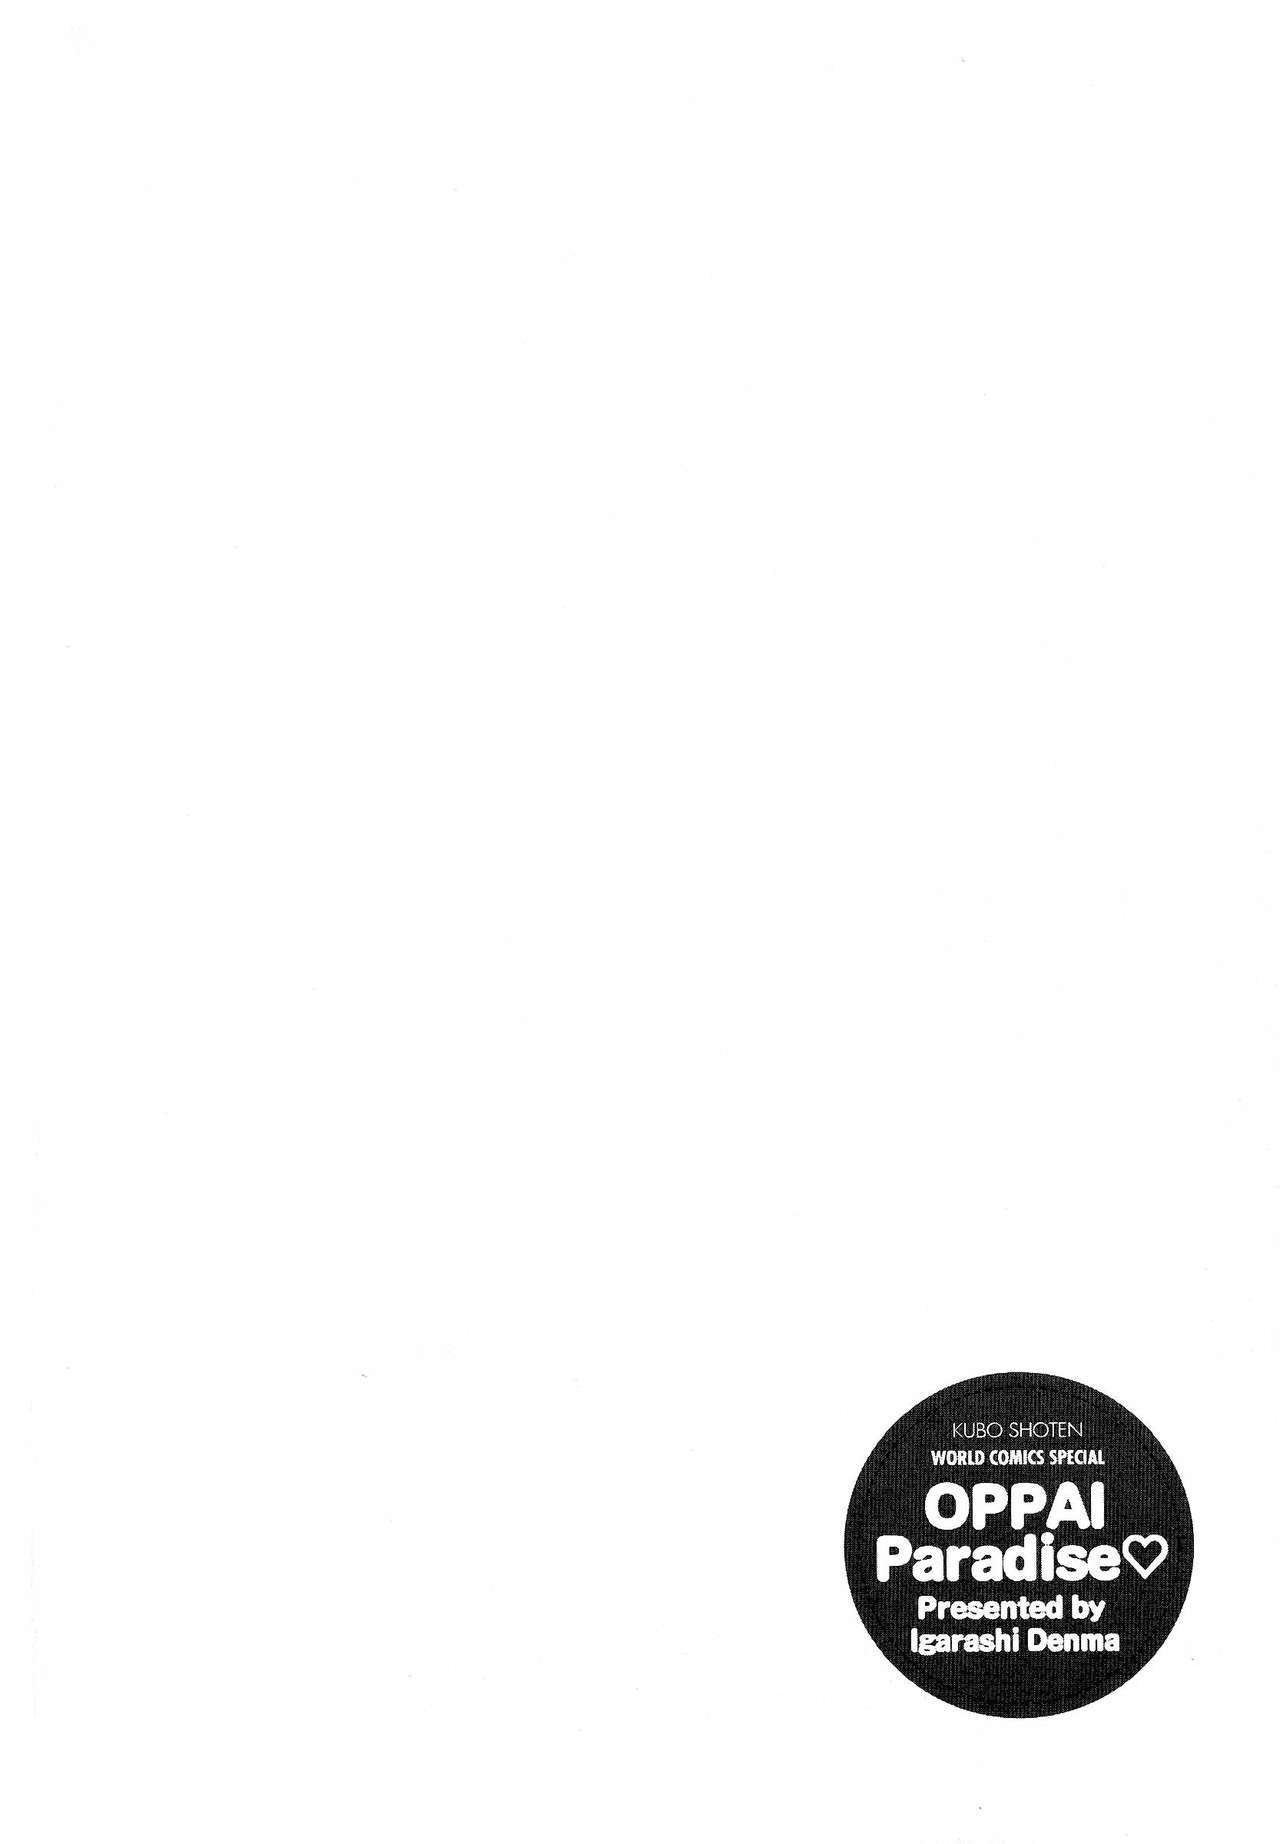 Oppara-OPPAIパラダイス